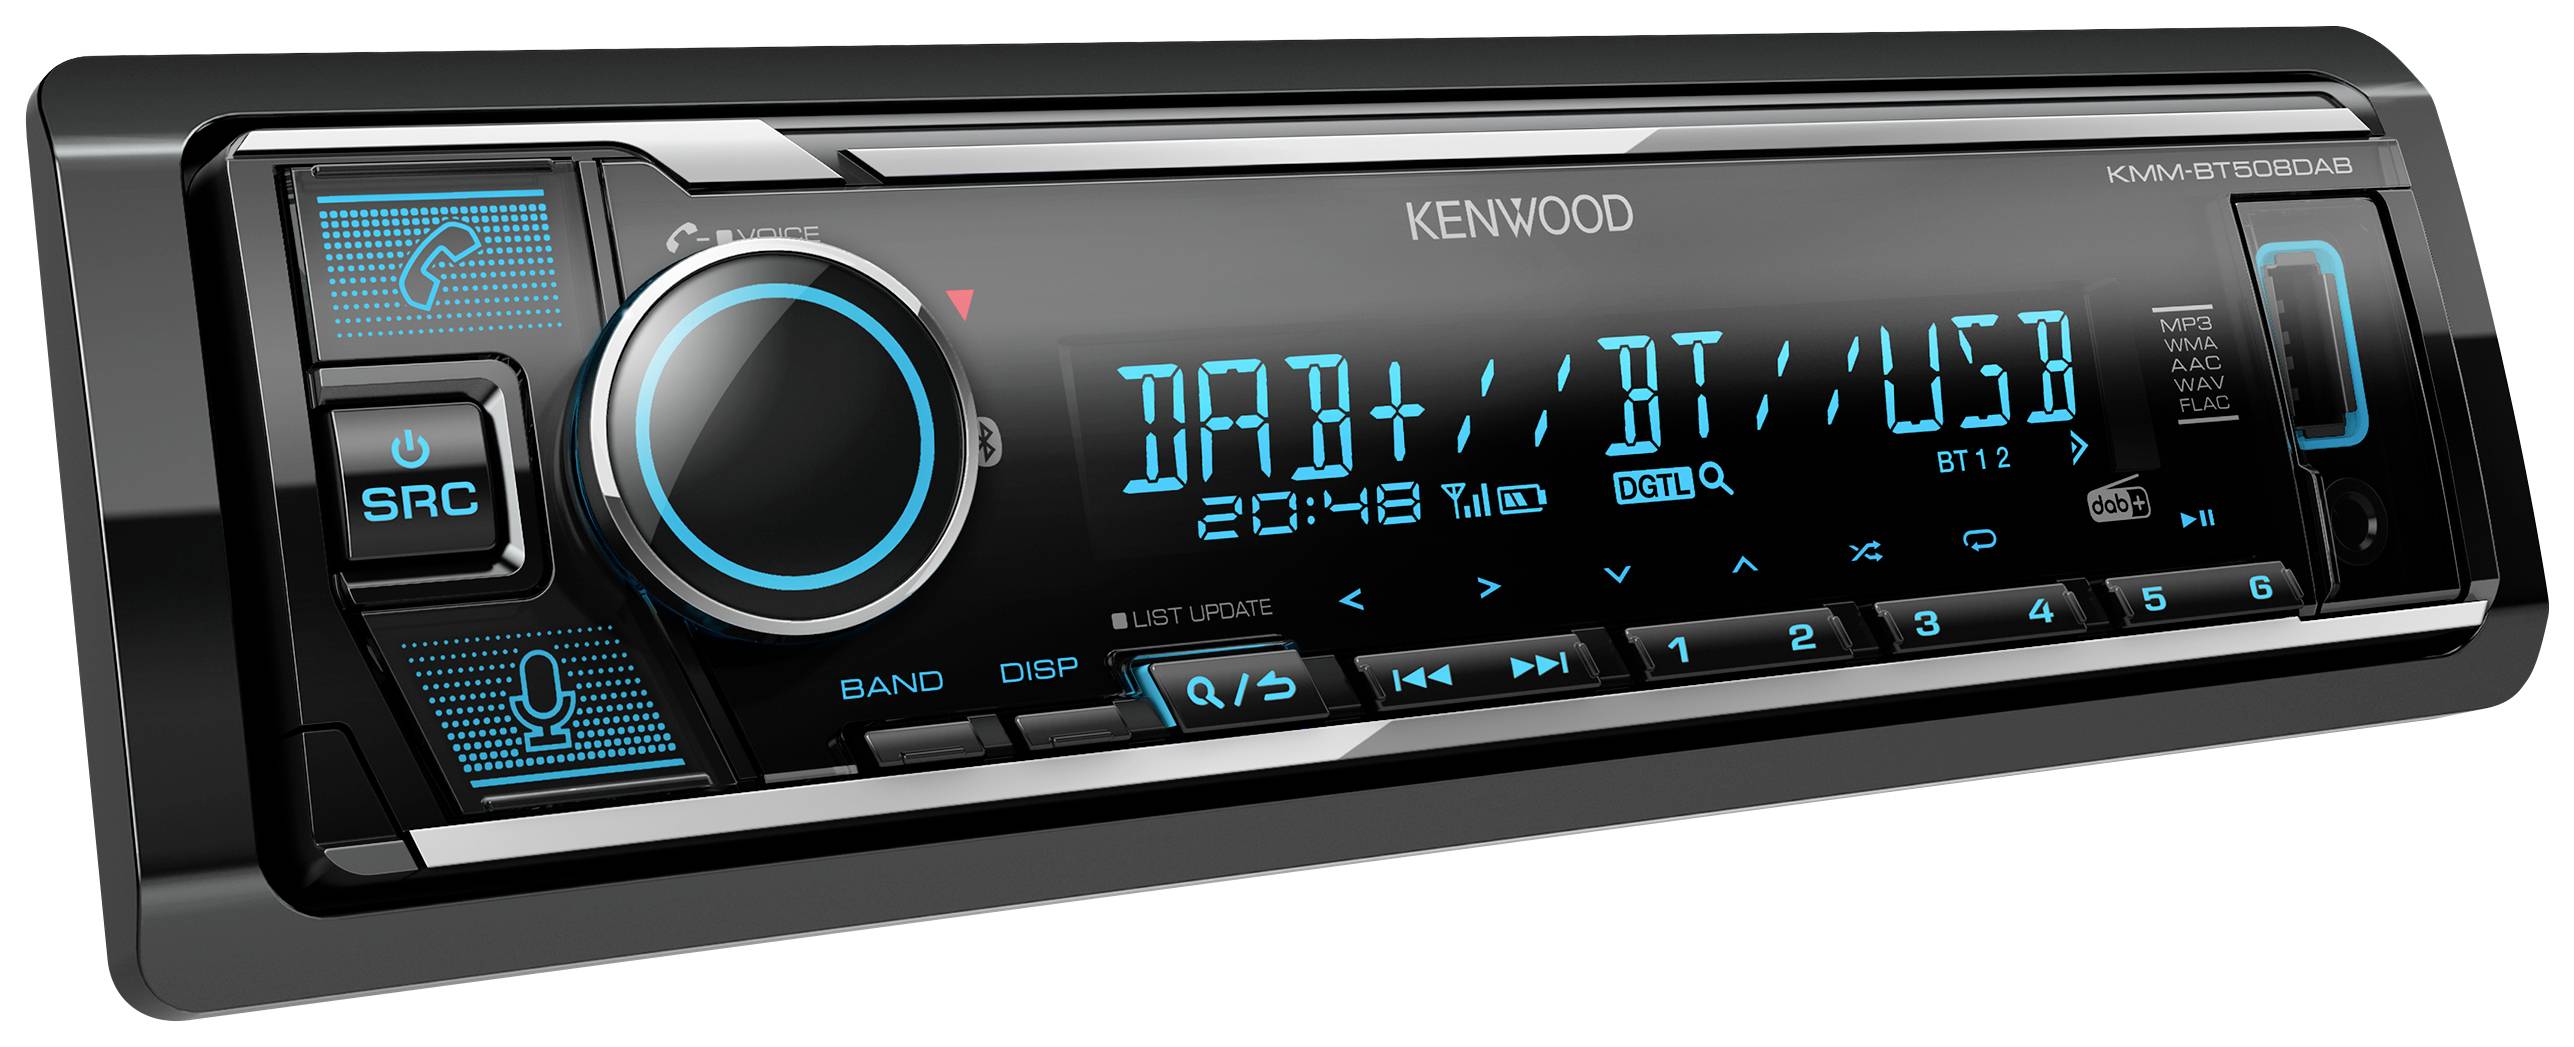 Kenwood KMMBT508DAB Autoradio DAB+ Tuner, Anschluss für